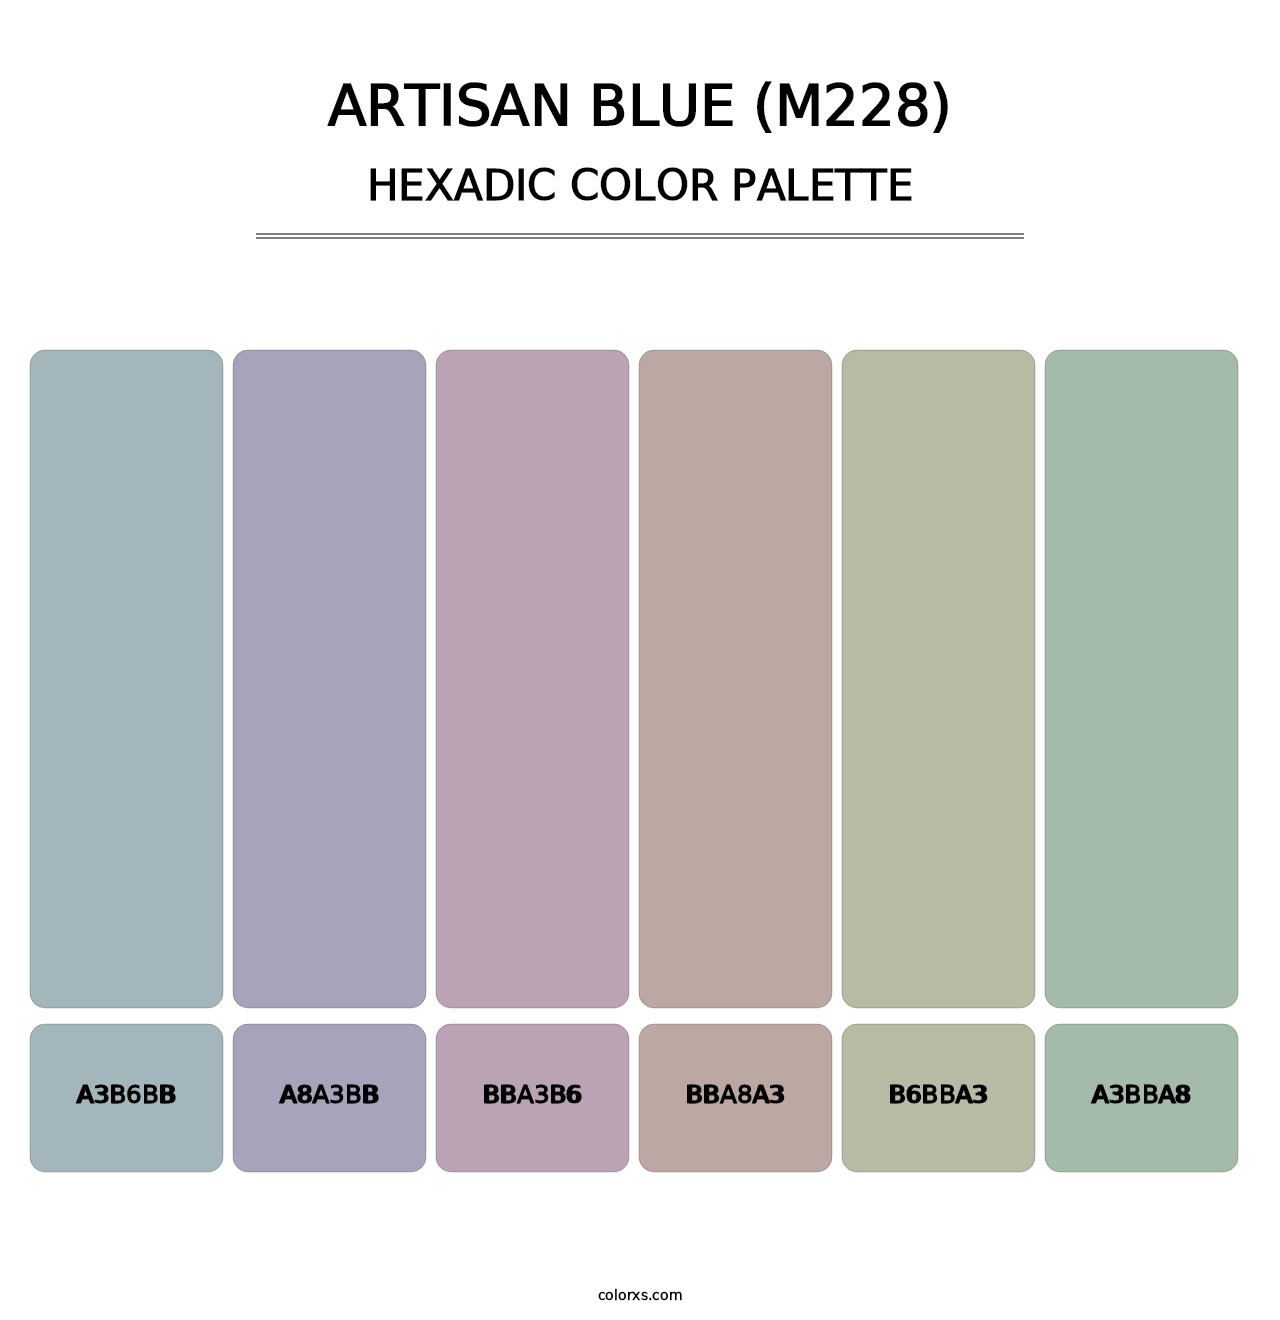 Artisan Blue (M228) - Hexadic Color Palette